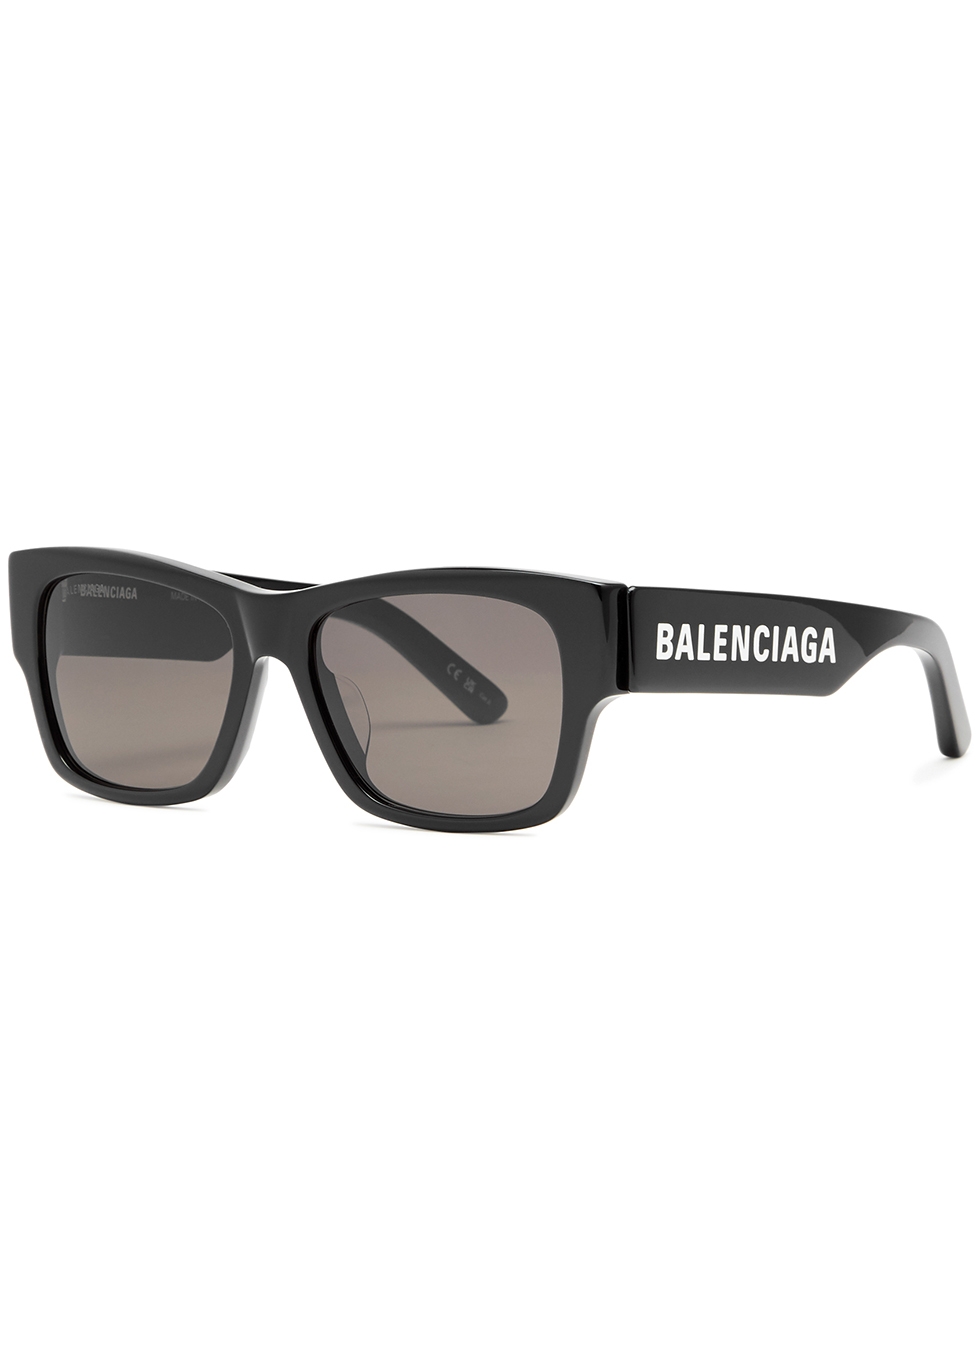 Balenciaga BB0095S Sunglasses in Grey  Designer Daydream